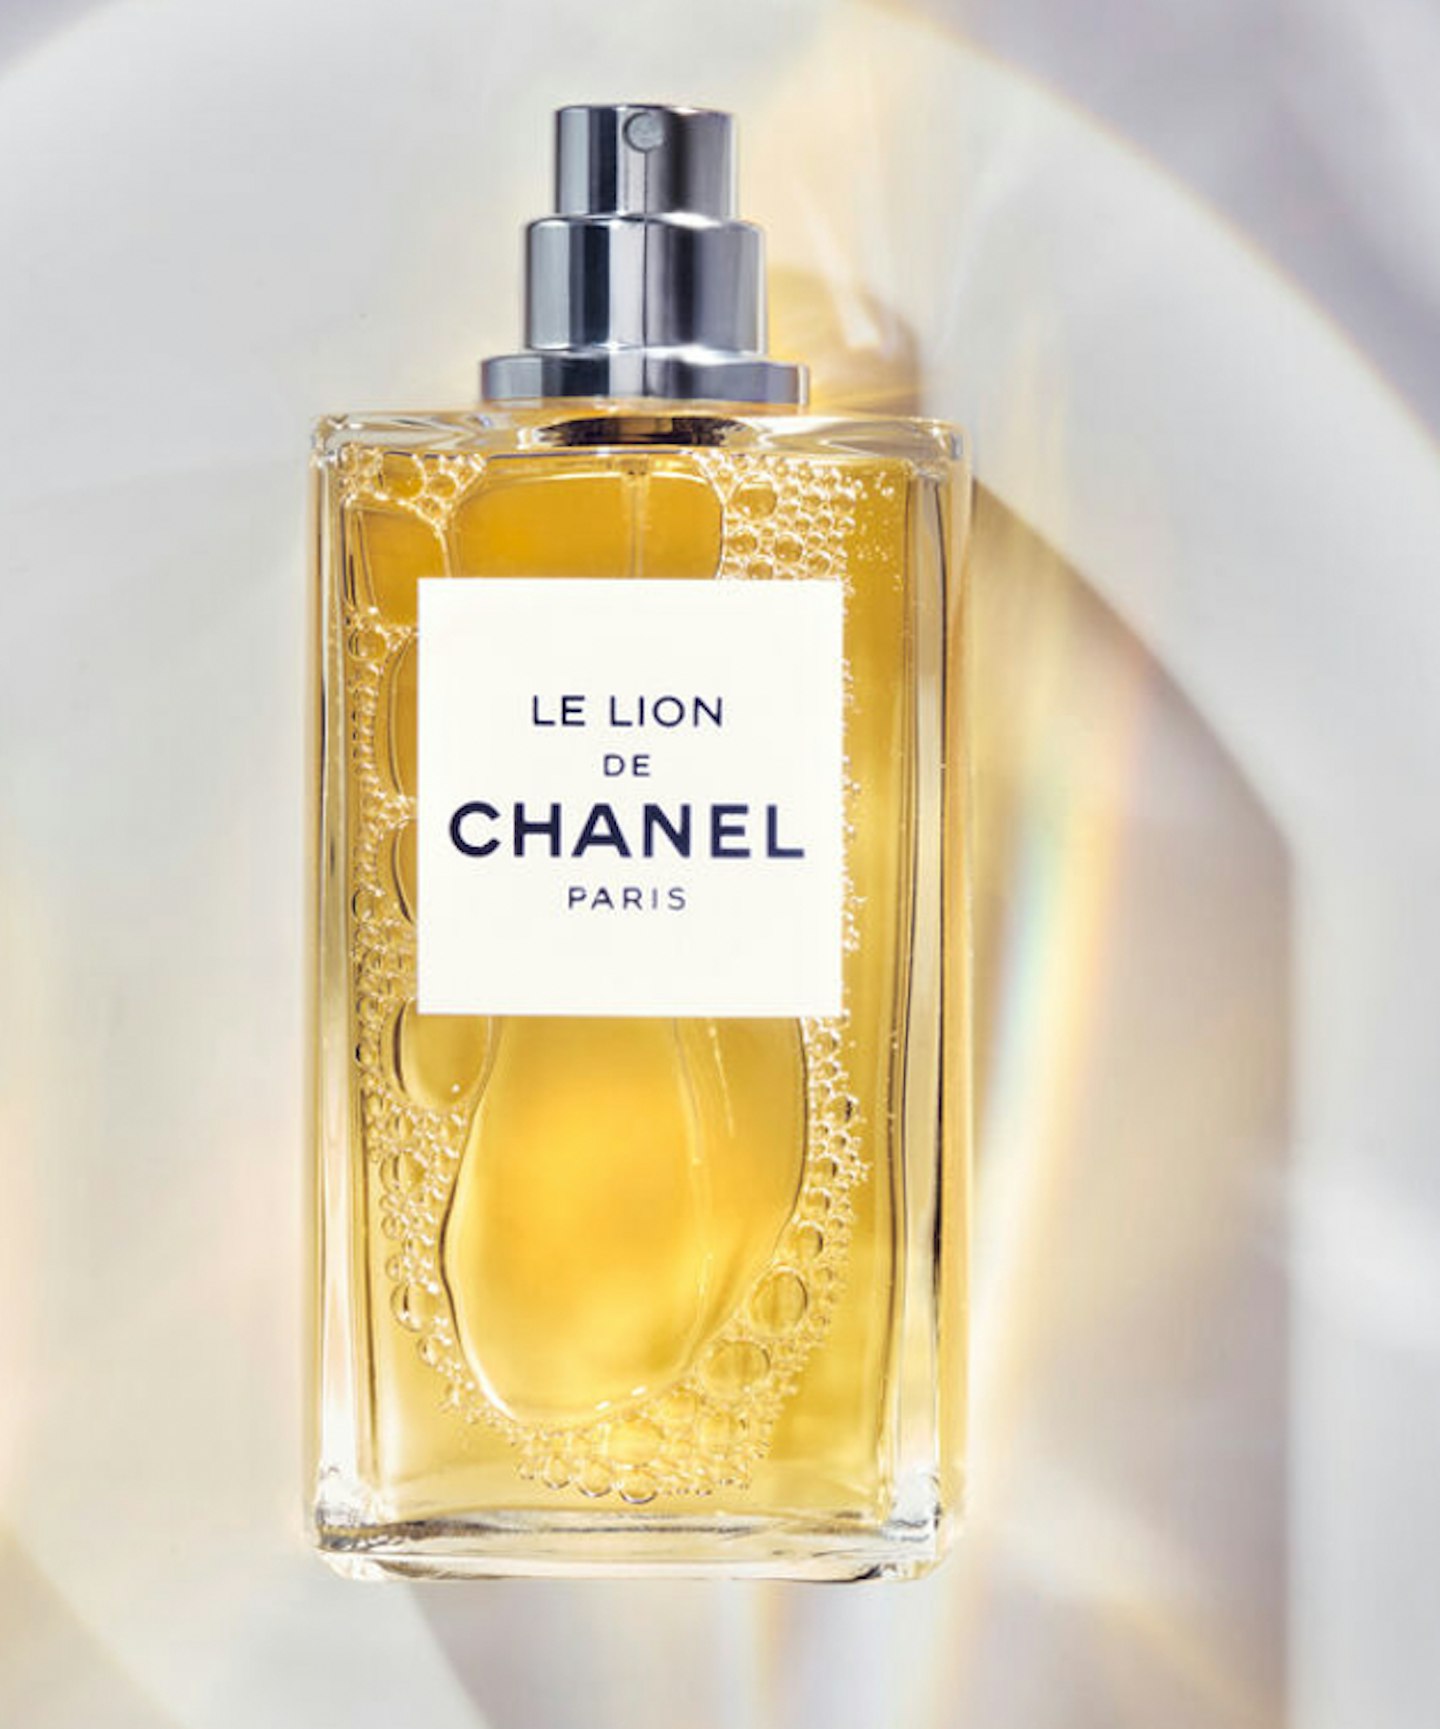 Chanel Le Lion de Chanel, £300